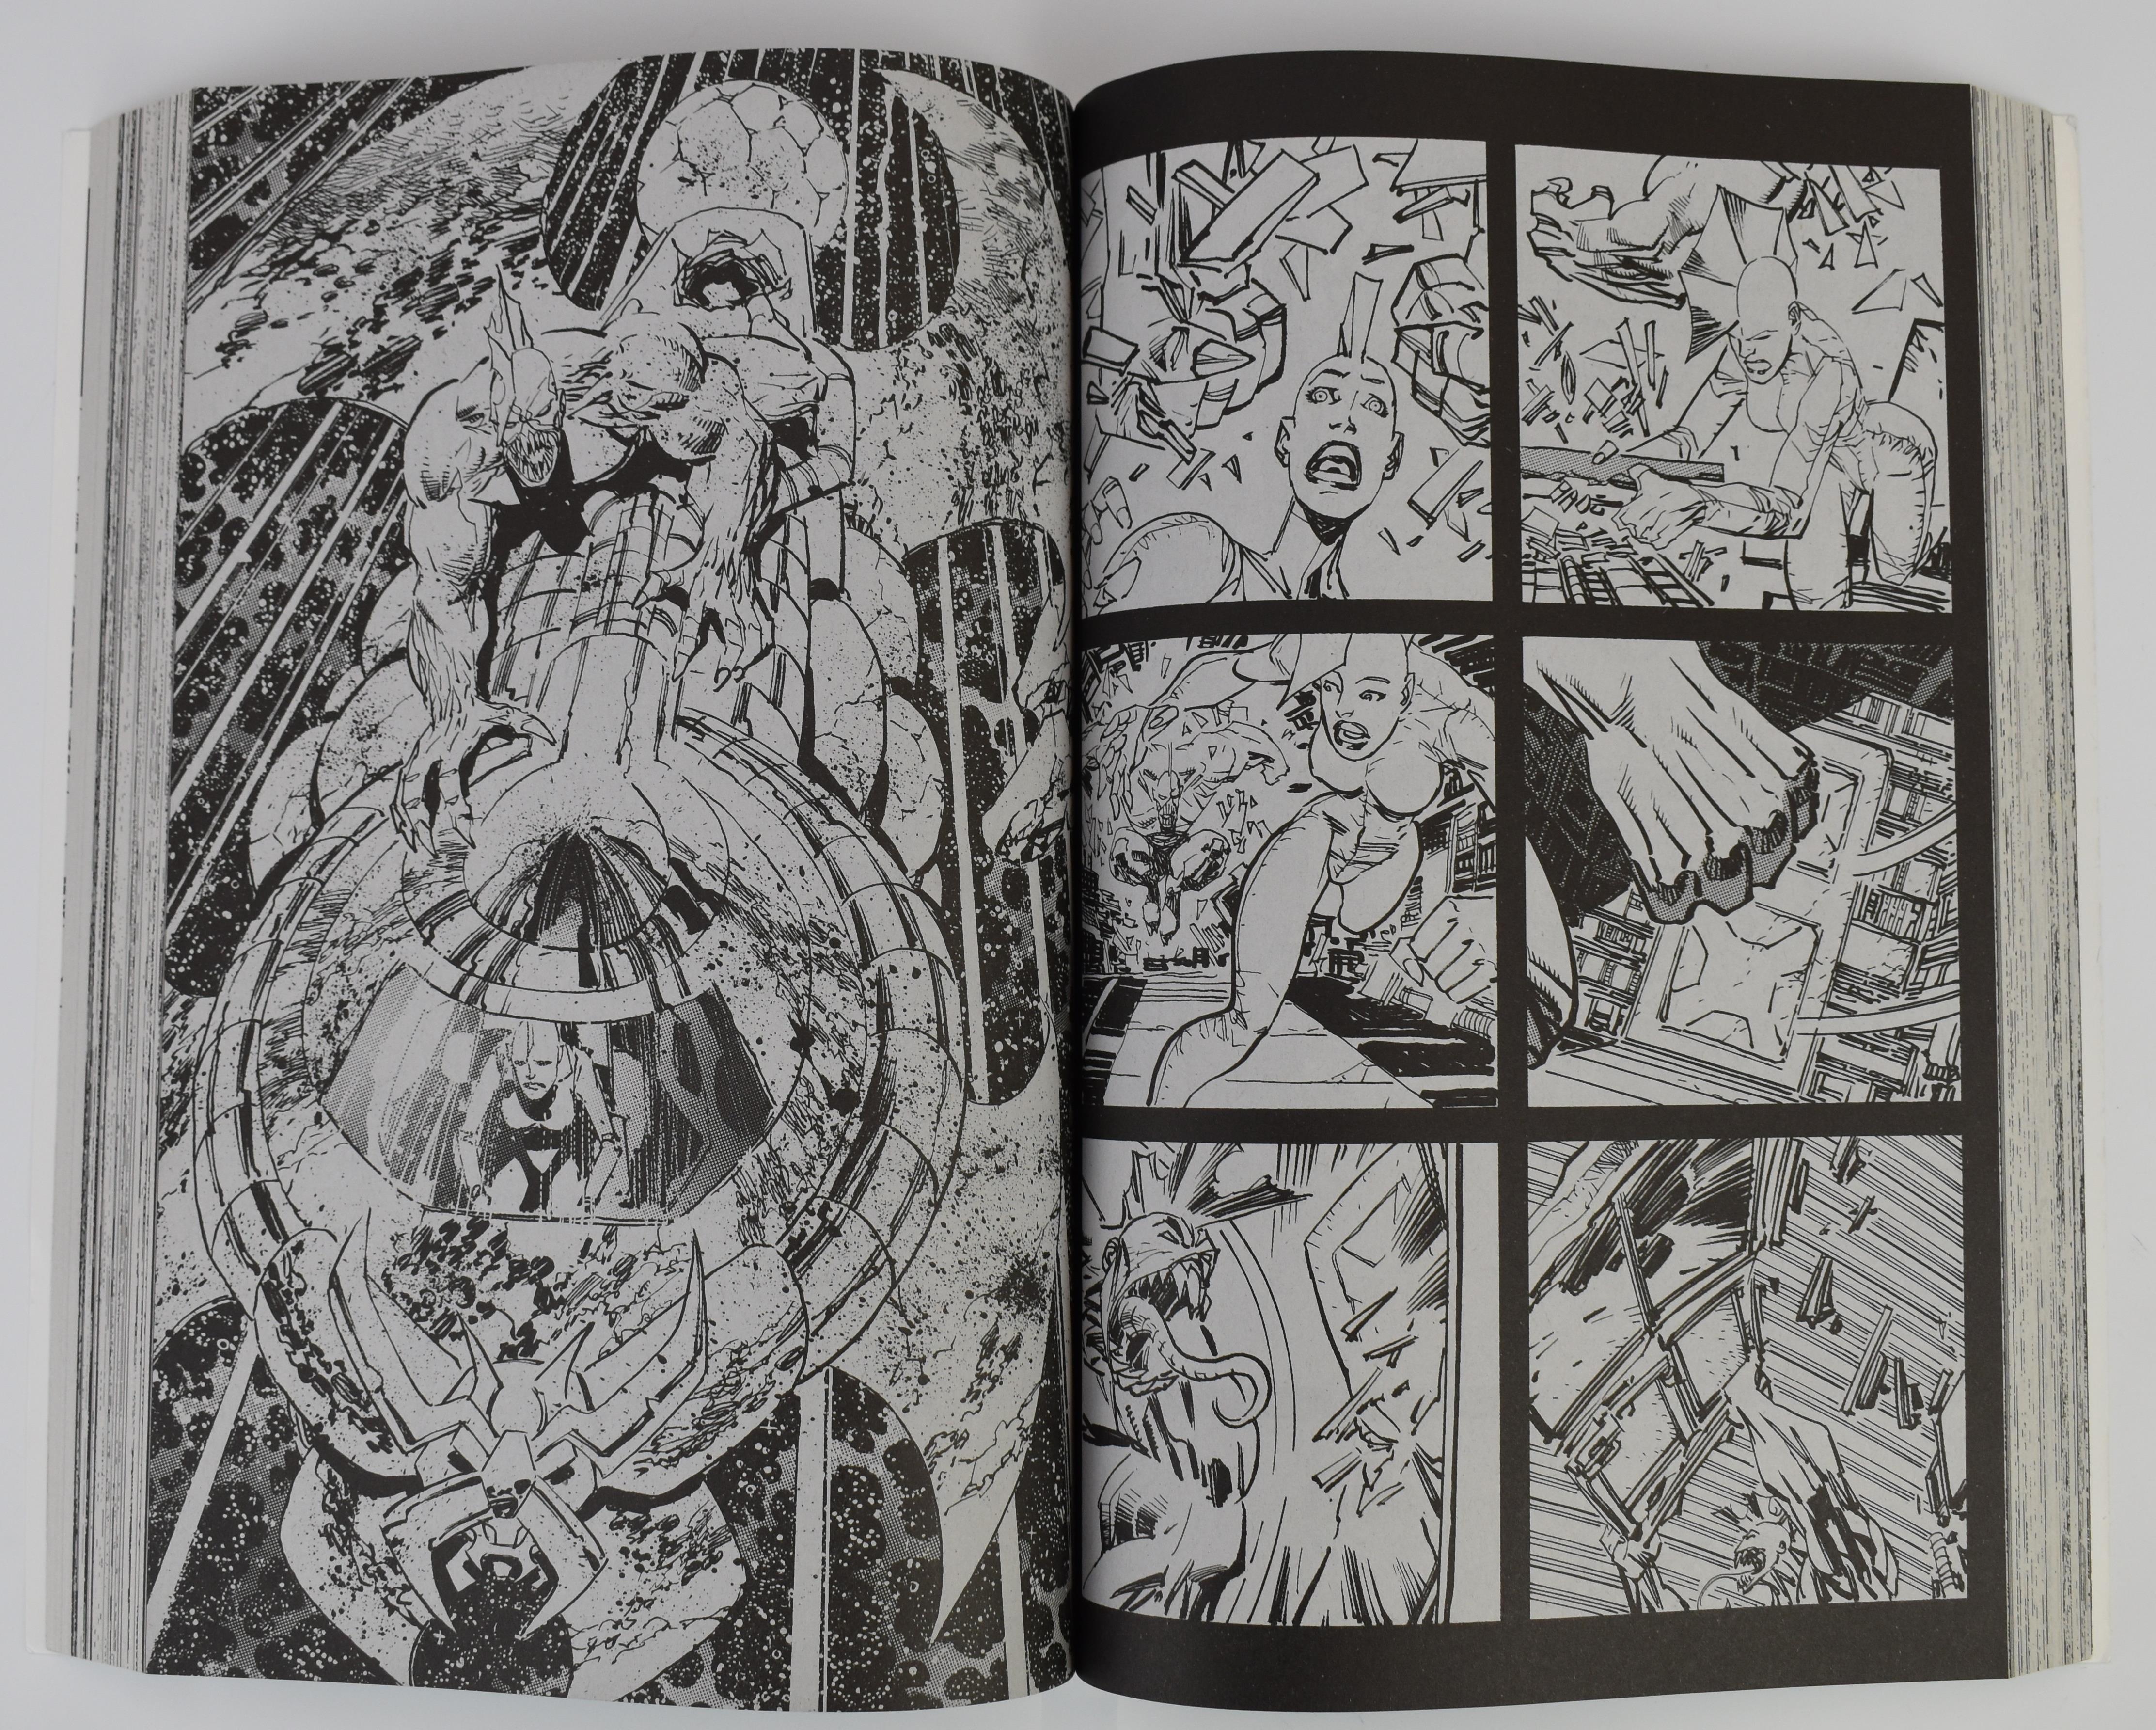 Savage Dragon Archives Volumes 1-9 by Erik Larsen, Image Comics. - Image 2 of 4